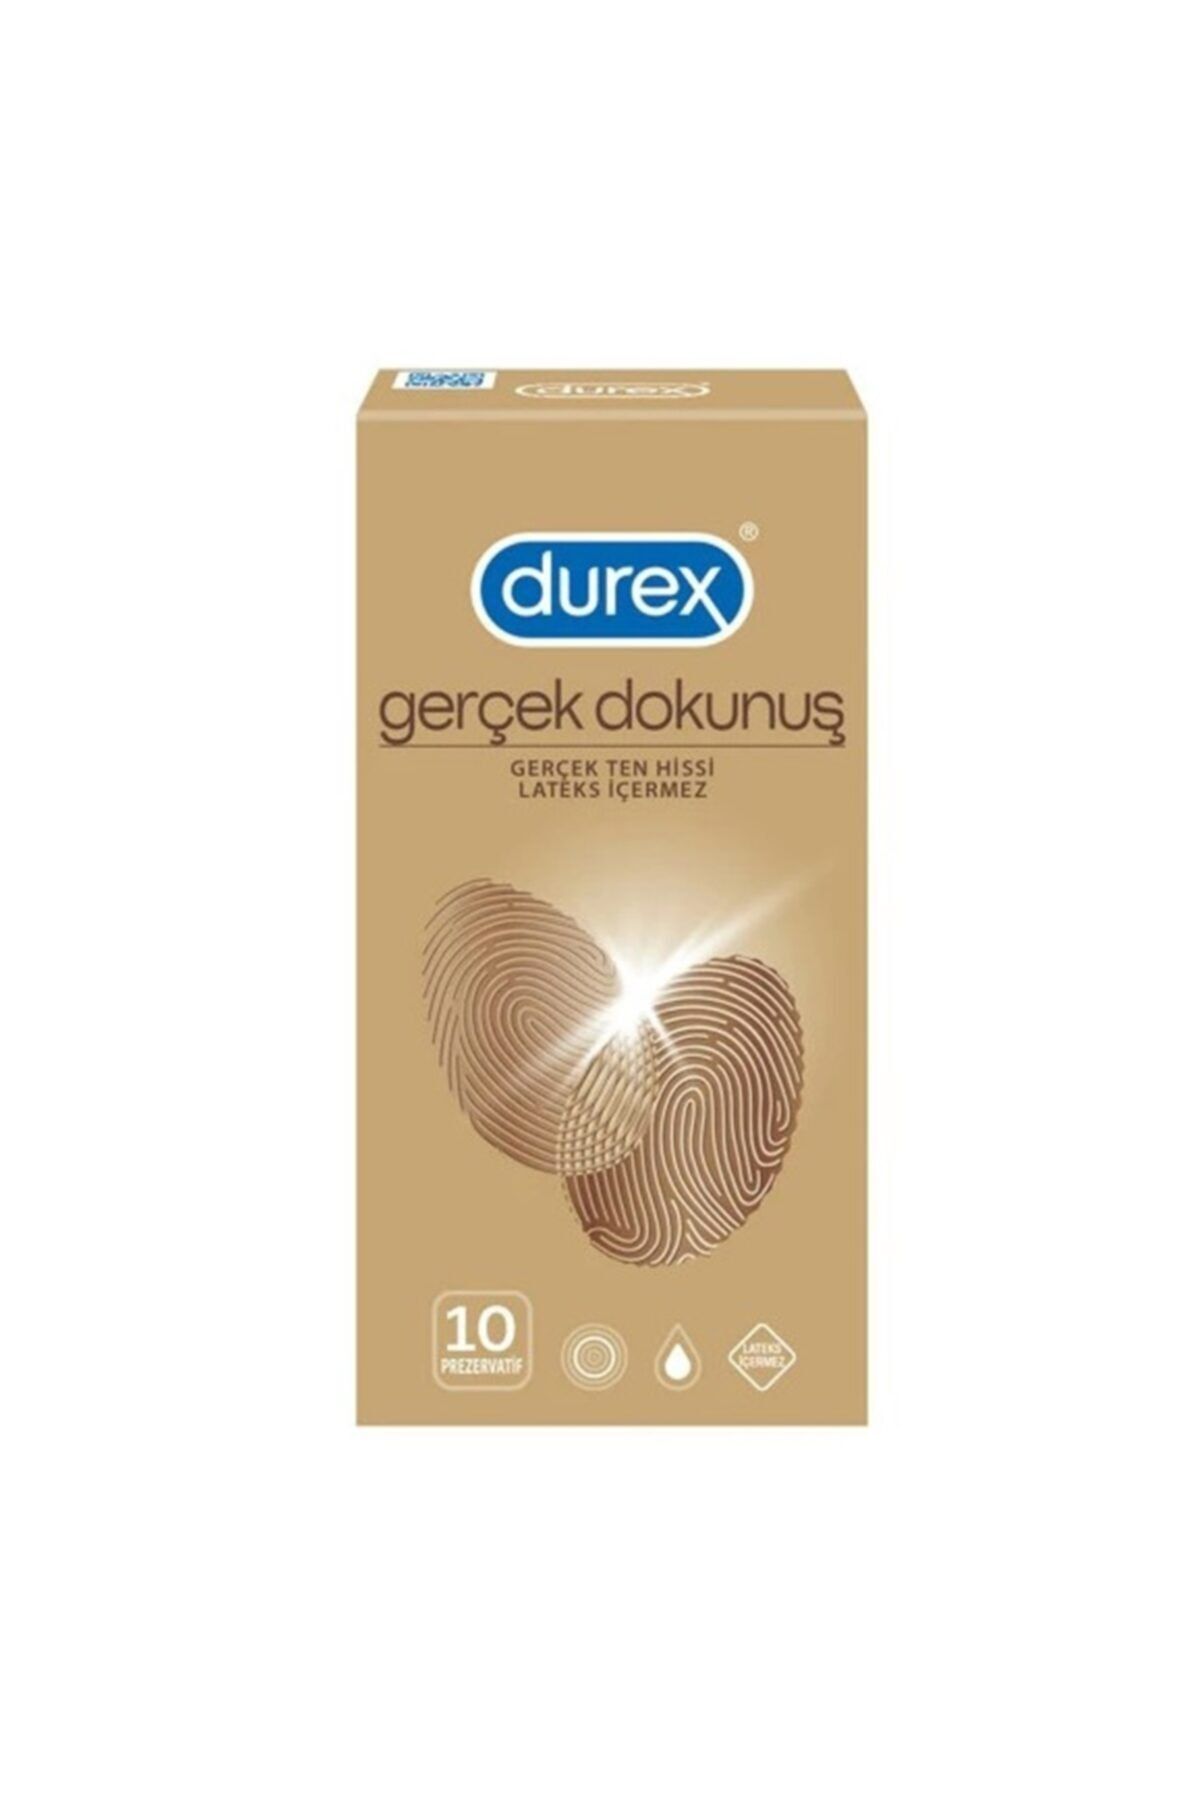 Durex - Gerçek Dokunuş Prezervatif 10 Lu